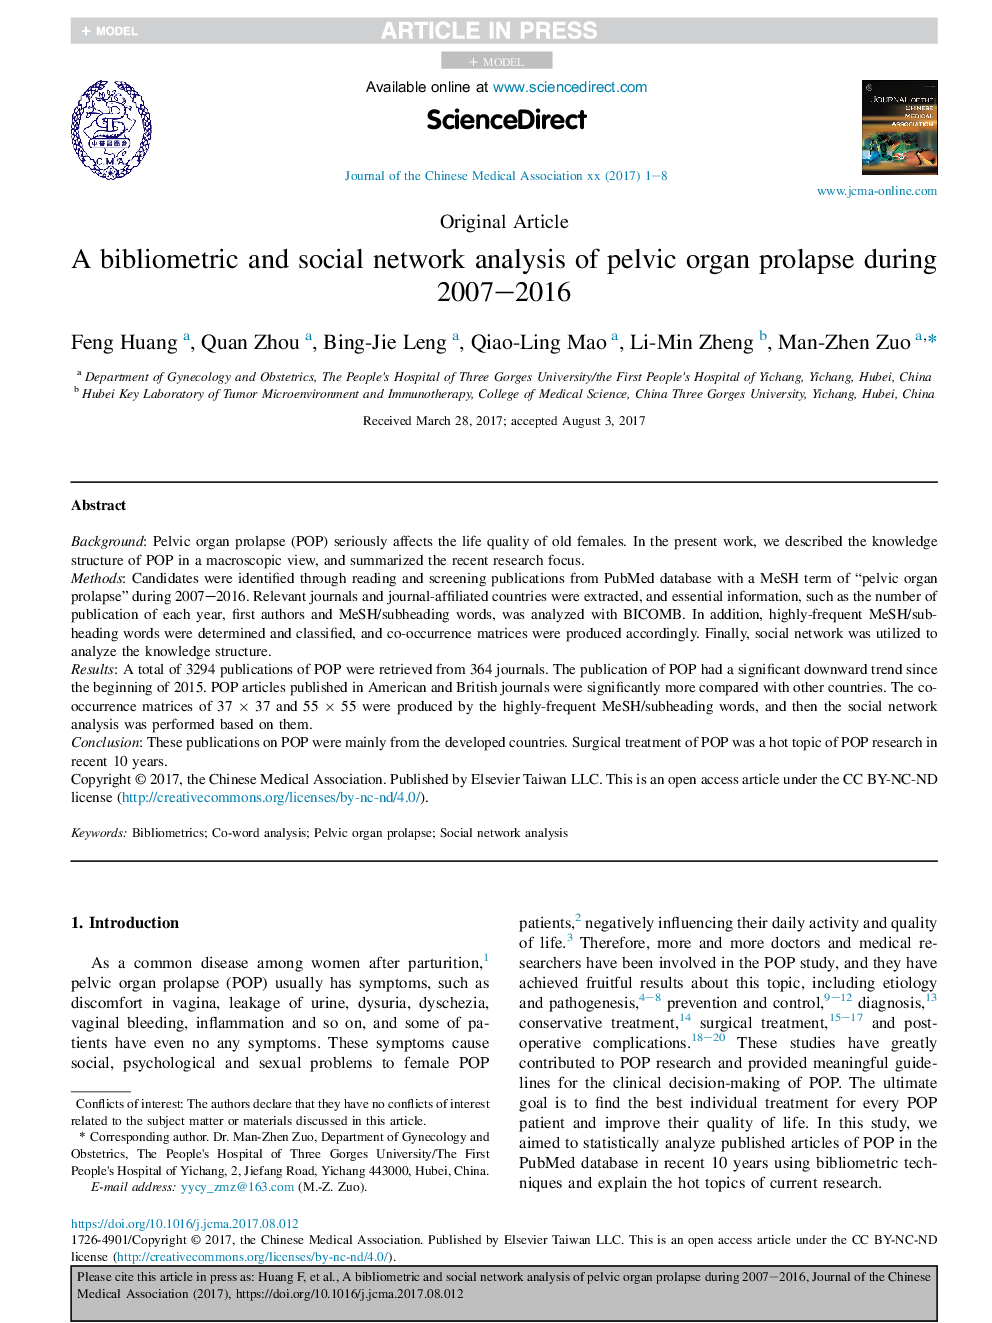 تجزیه و تحلیل سیستم های کتابشناختی و شبکه های اجتماعی پرولاپس عضو لگنی طی سال های 2007-2016 